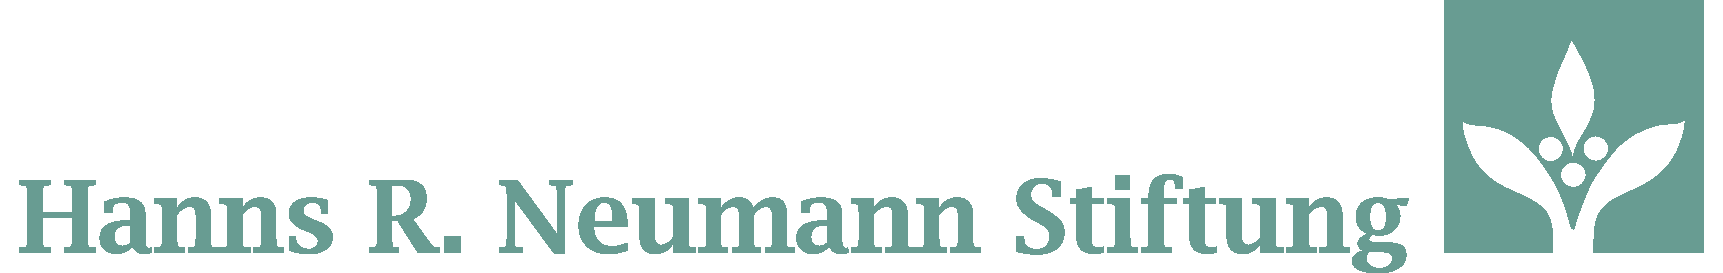 Hans R. Neumann Stiftung logo